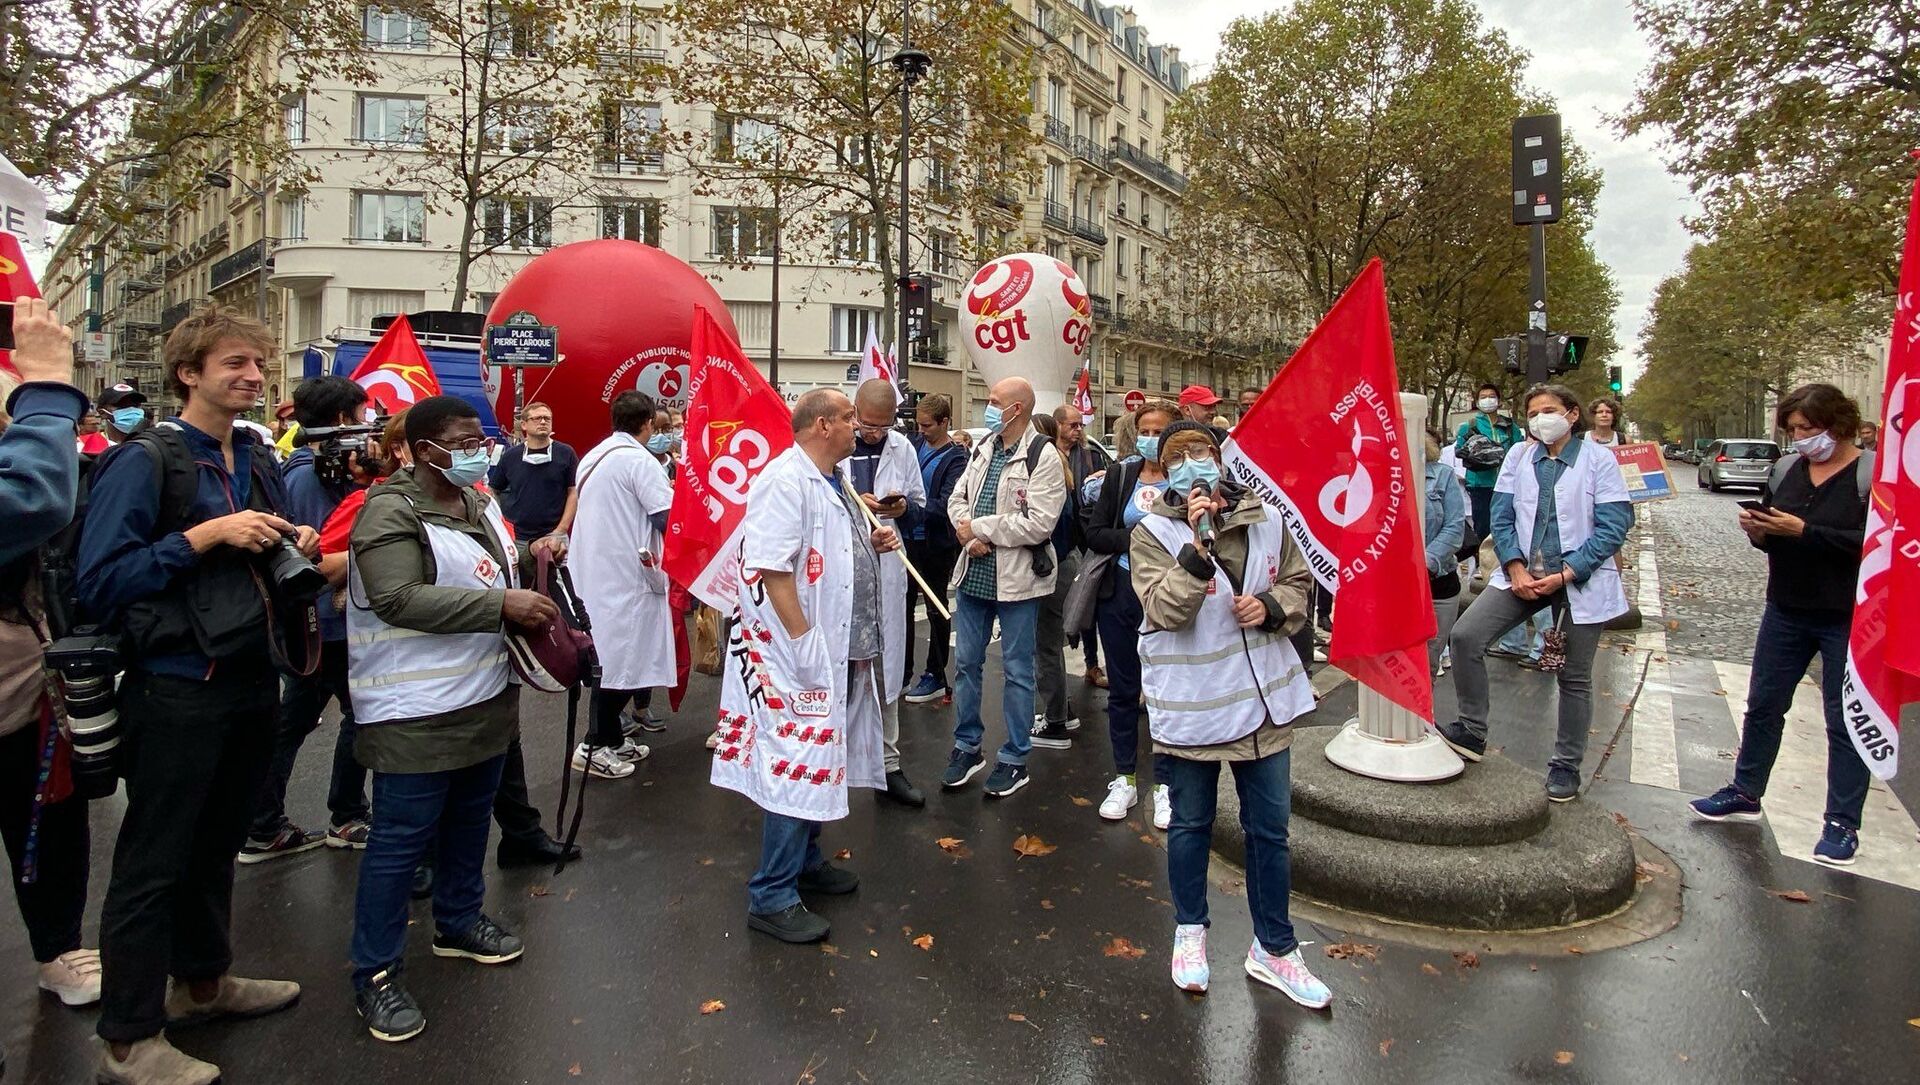 Manifestation du personnel soignant à l’appel de la CGT à Paris contre l'obligation vaccinale, le 14 septembre 2021 - Sputnik Afrique, 1920, 14.09.2021